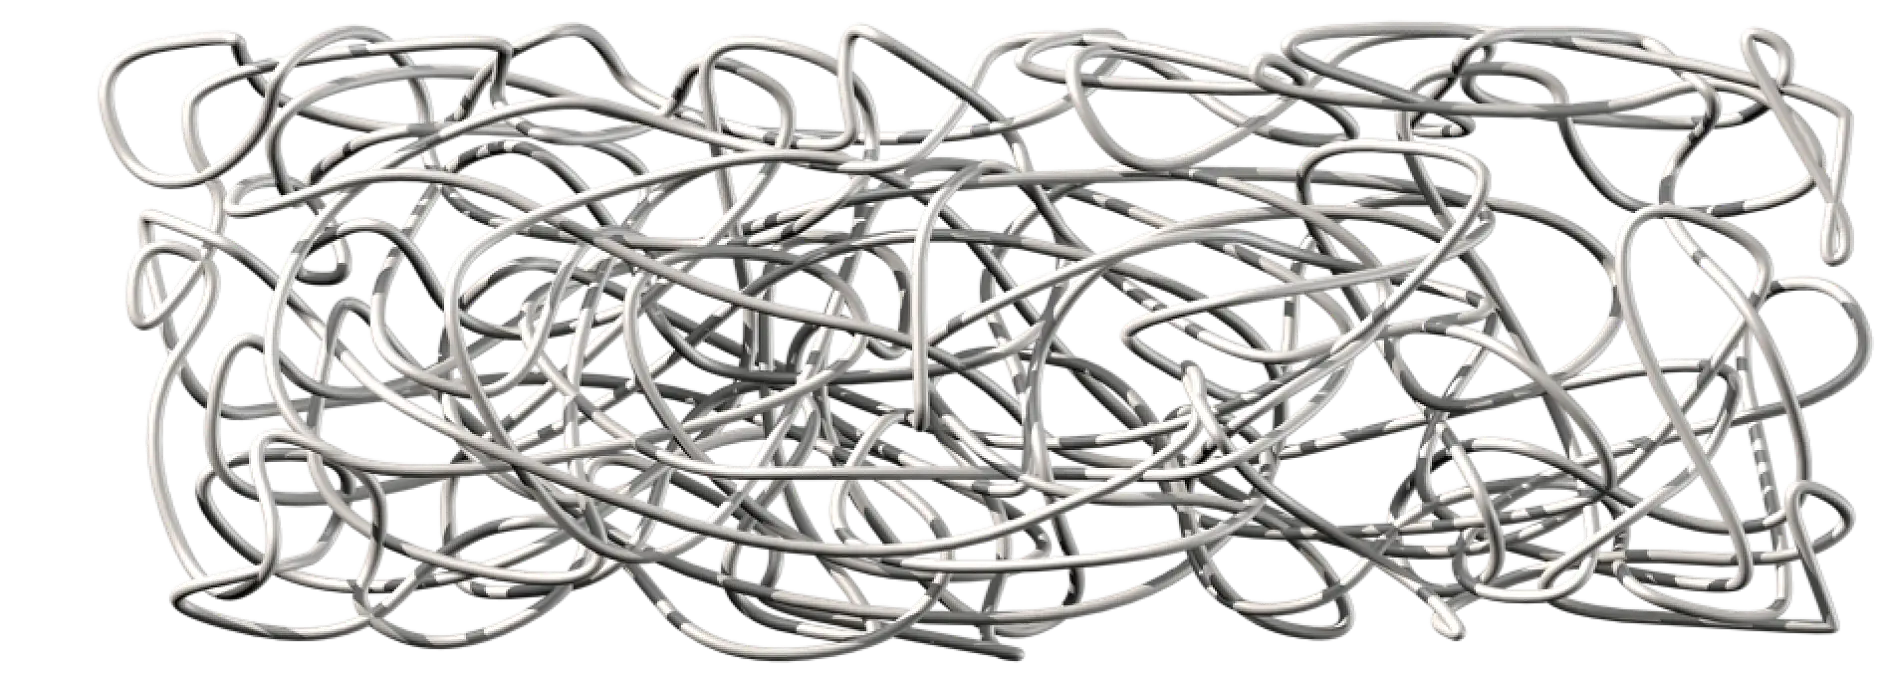 天然橡胶由特别长的聚合物链组成，这些聚合物链彼此缠绕但并不相连。